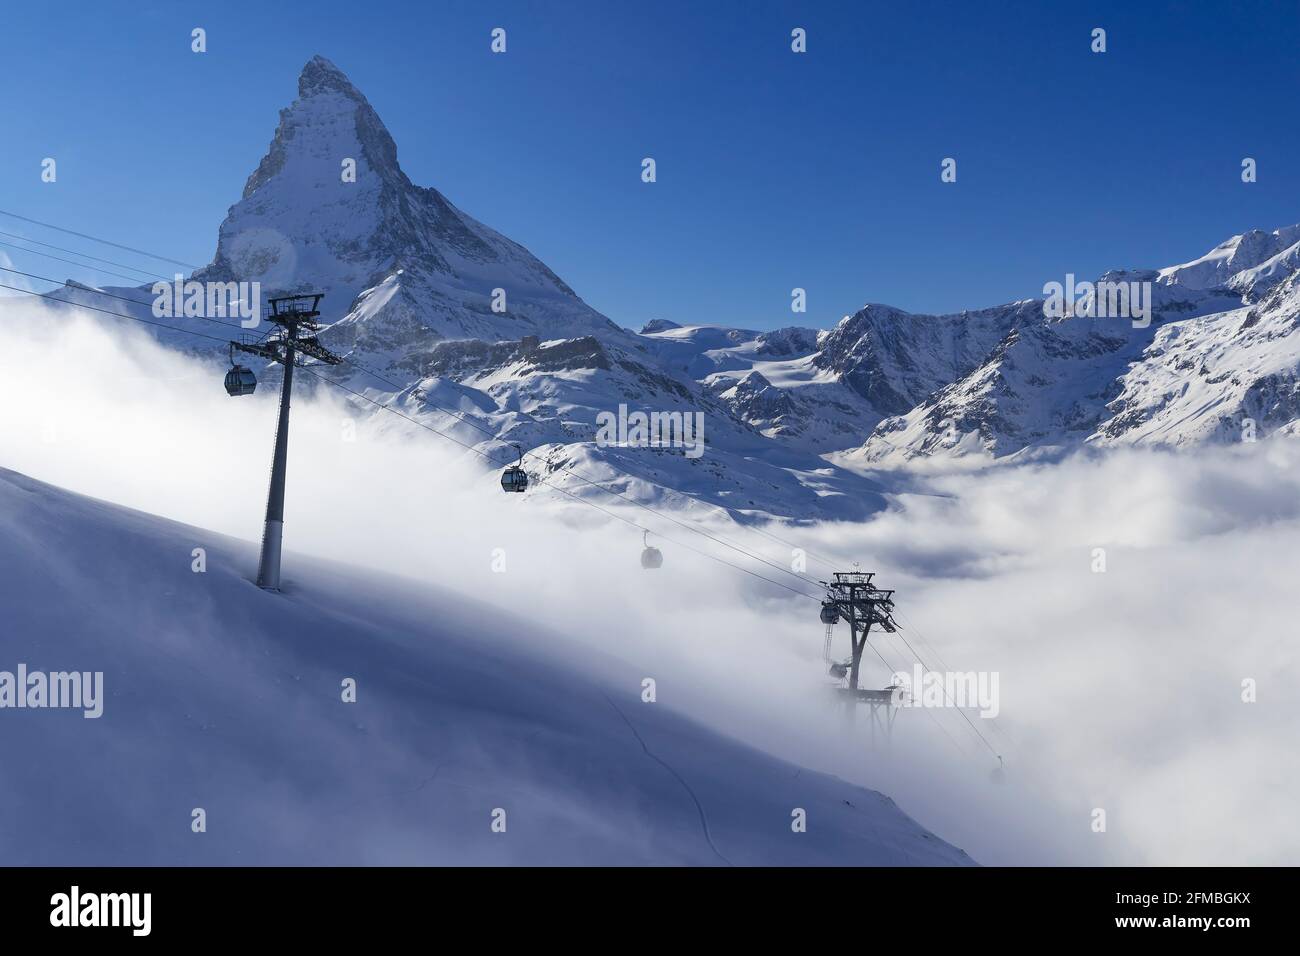 Während das Mattertal in dichten Nebel gehüllt ist, scheint die Sonne wunderschön darüber und zieht Wintersport an. Mit der Gornergratbahn oder der Seilbahn kommt man von Zermatt aus in wenigen Minuten über die Nebellinie. Stockfoto